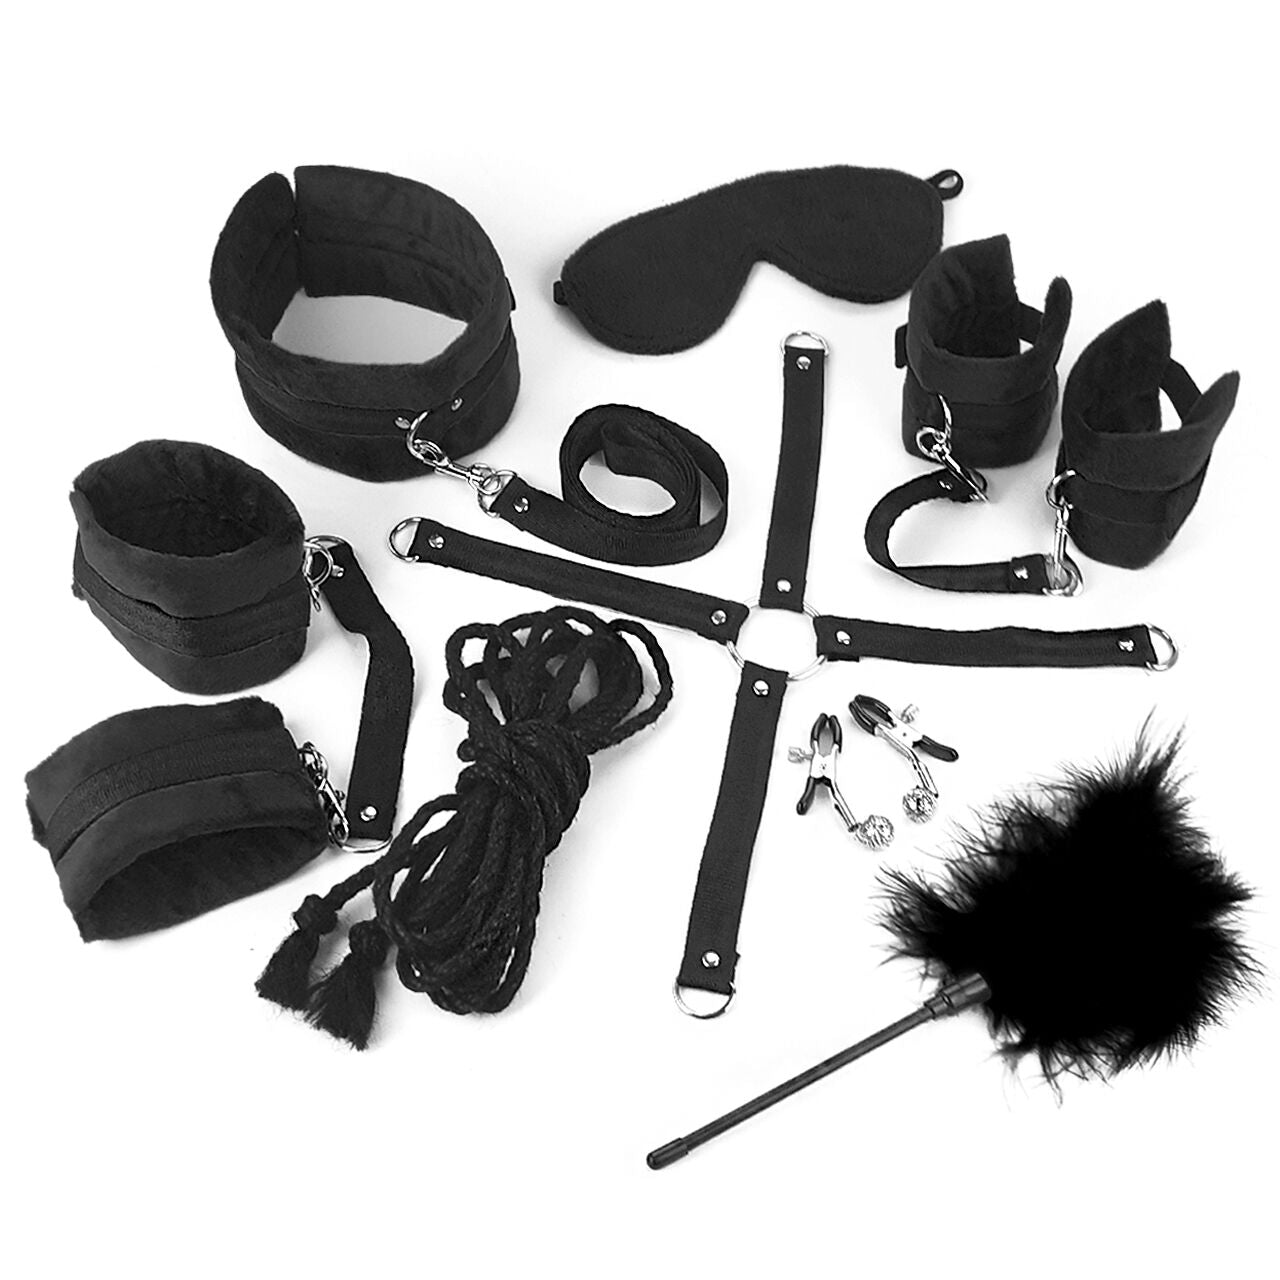 bdsm bondage gear kit set